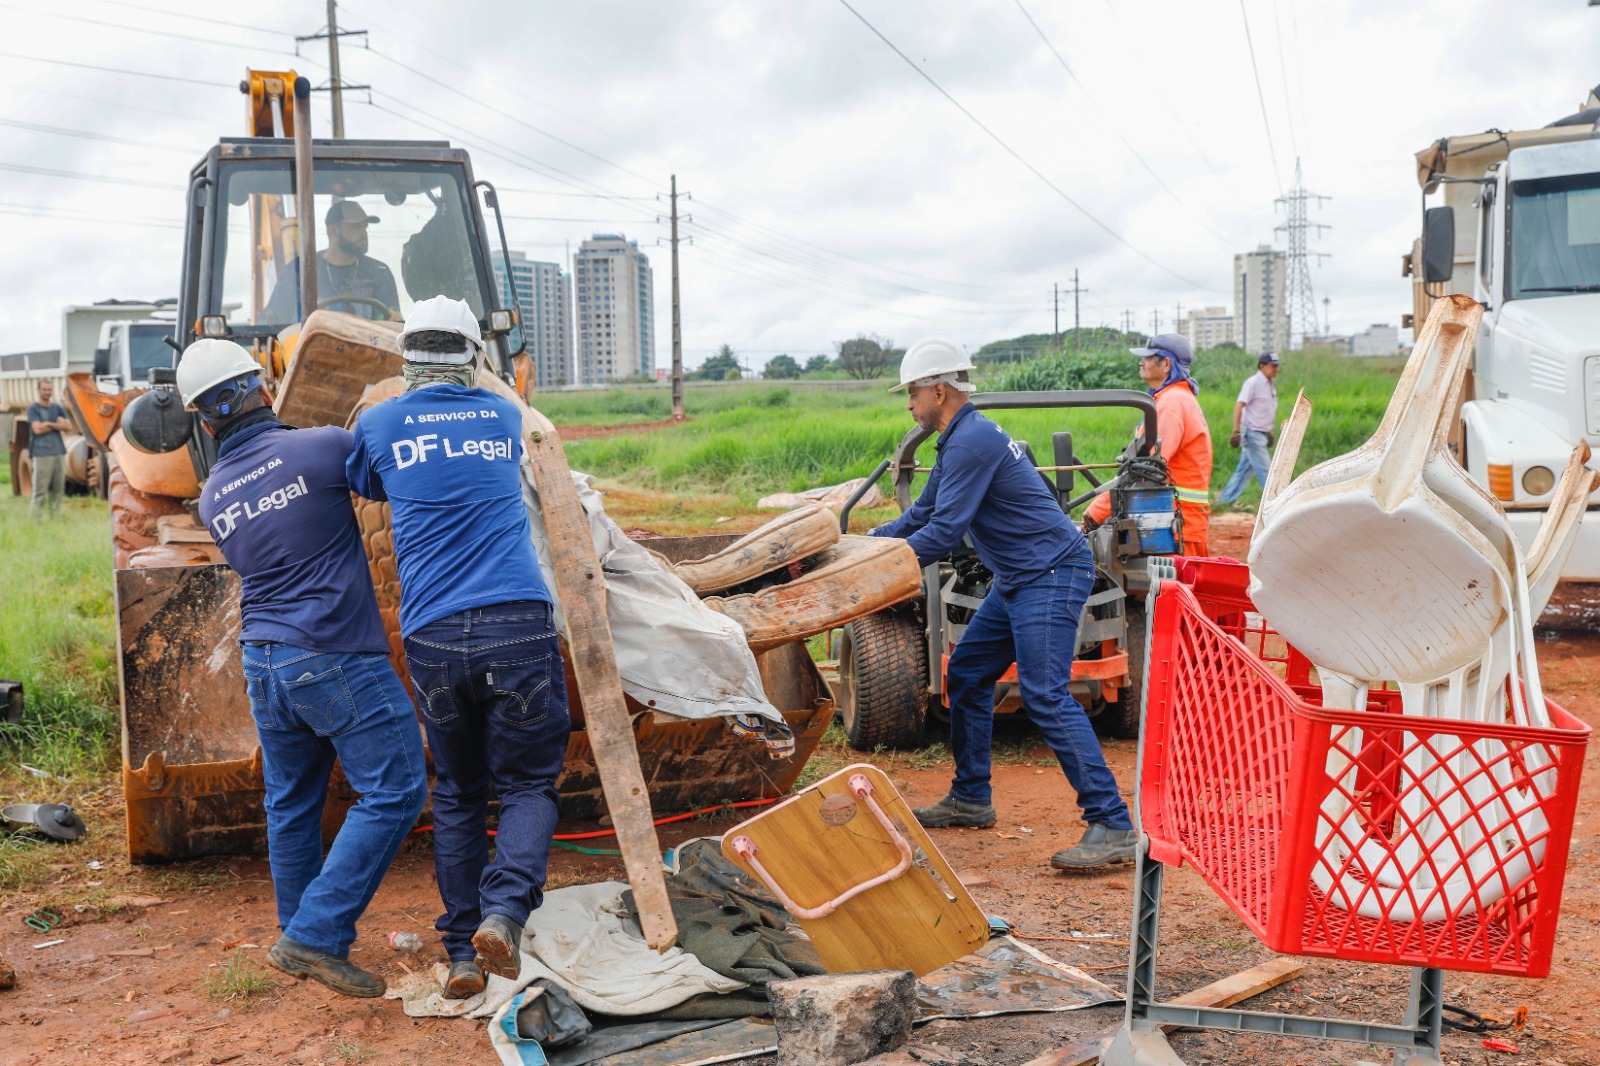 Equipes da DF Legal devem ficar dez dias no local para impedir uma nova ocupação irregular na área | Fotos: Lúcio Bernardo Jr./ Agência Brasília